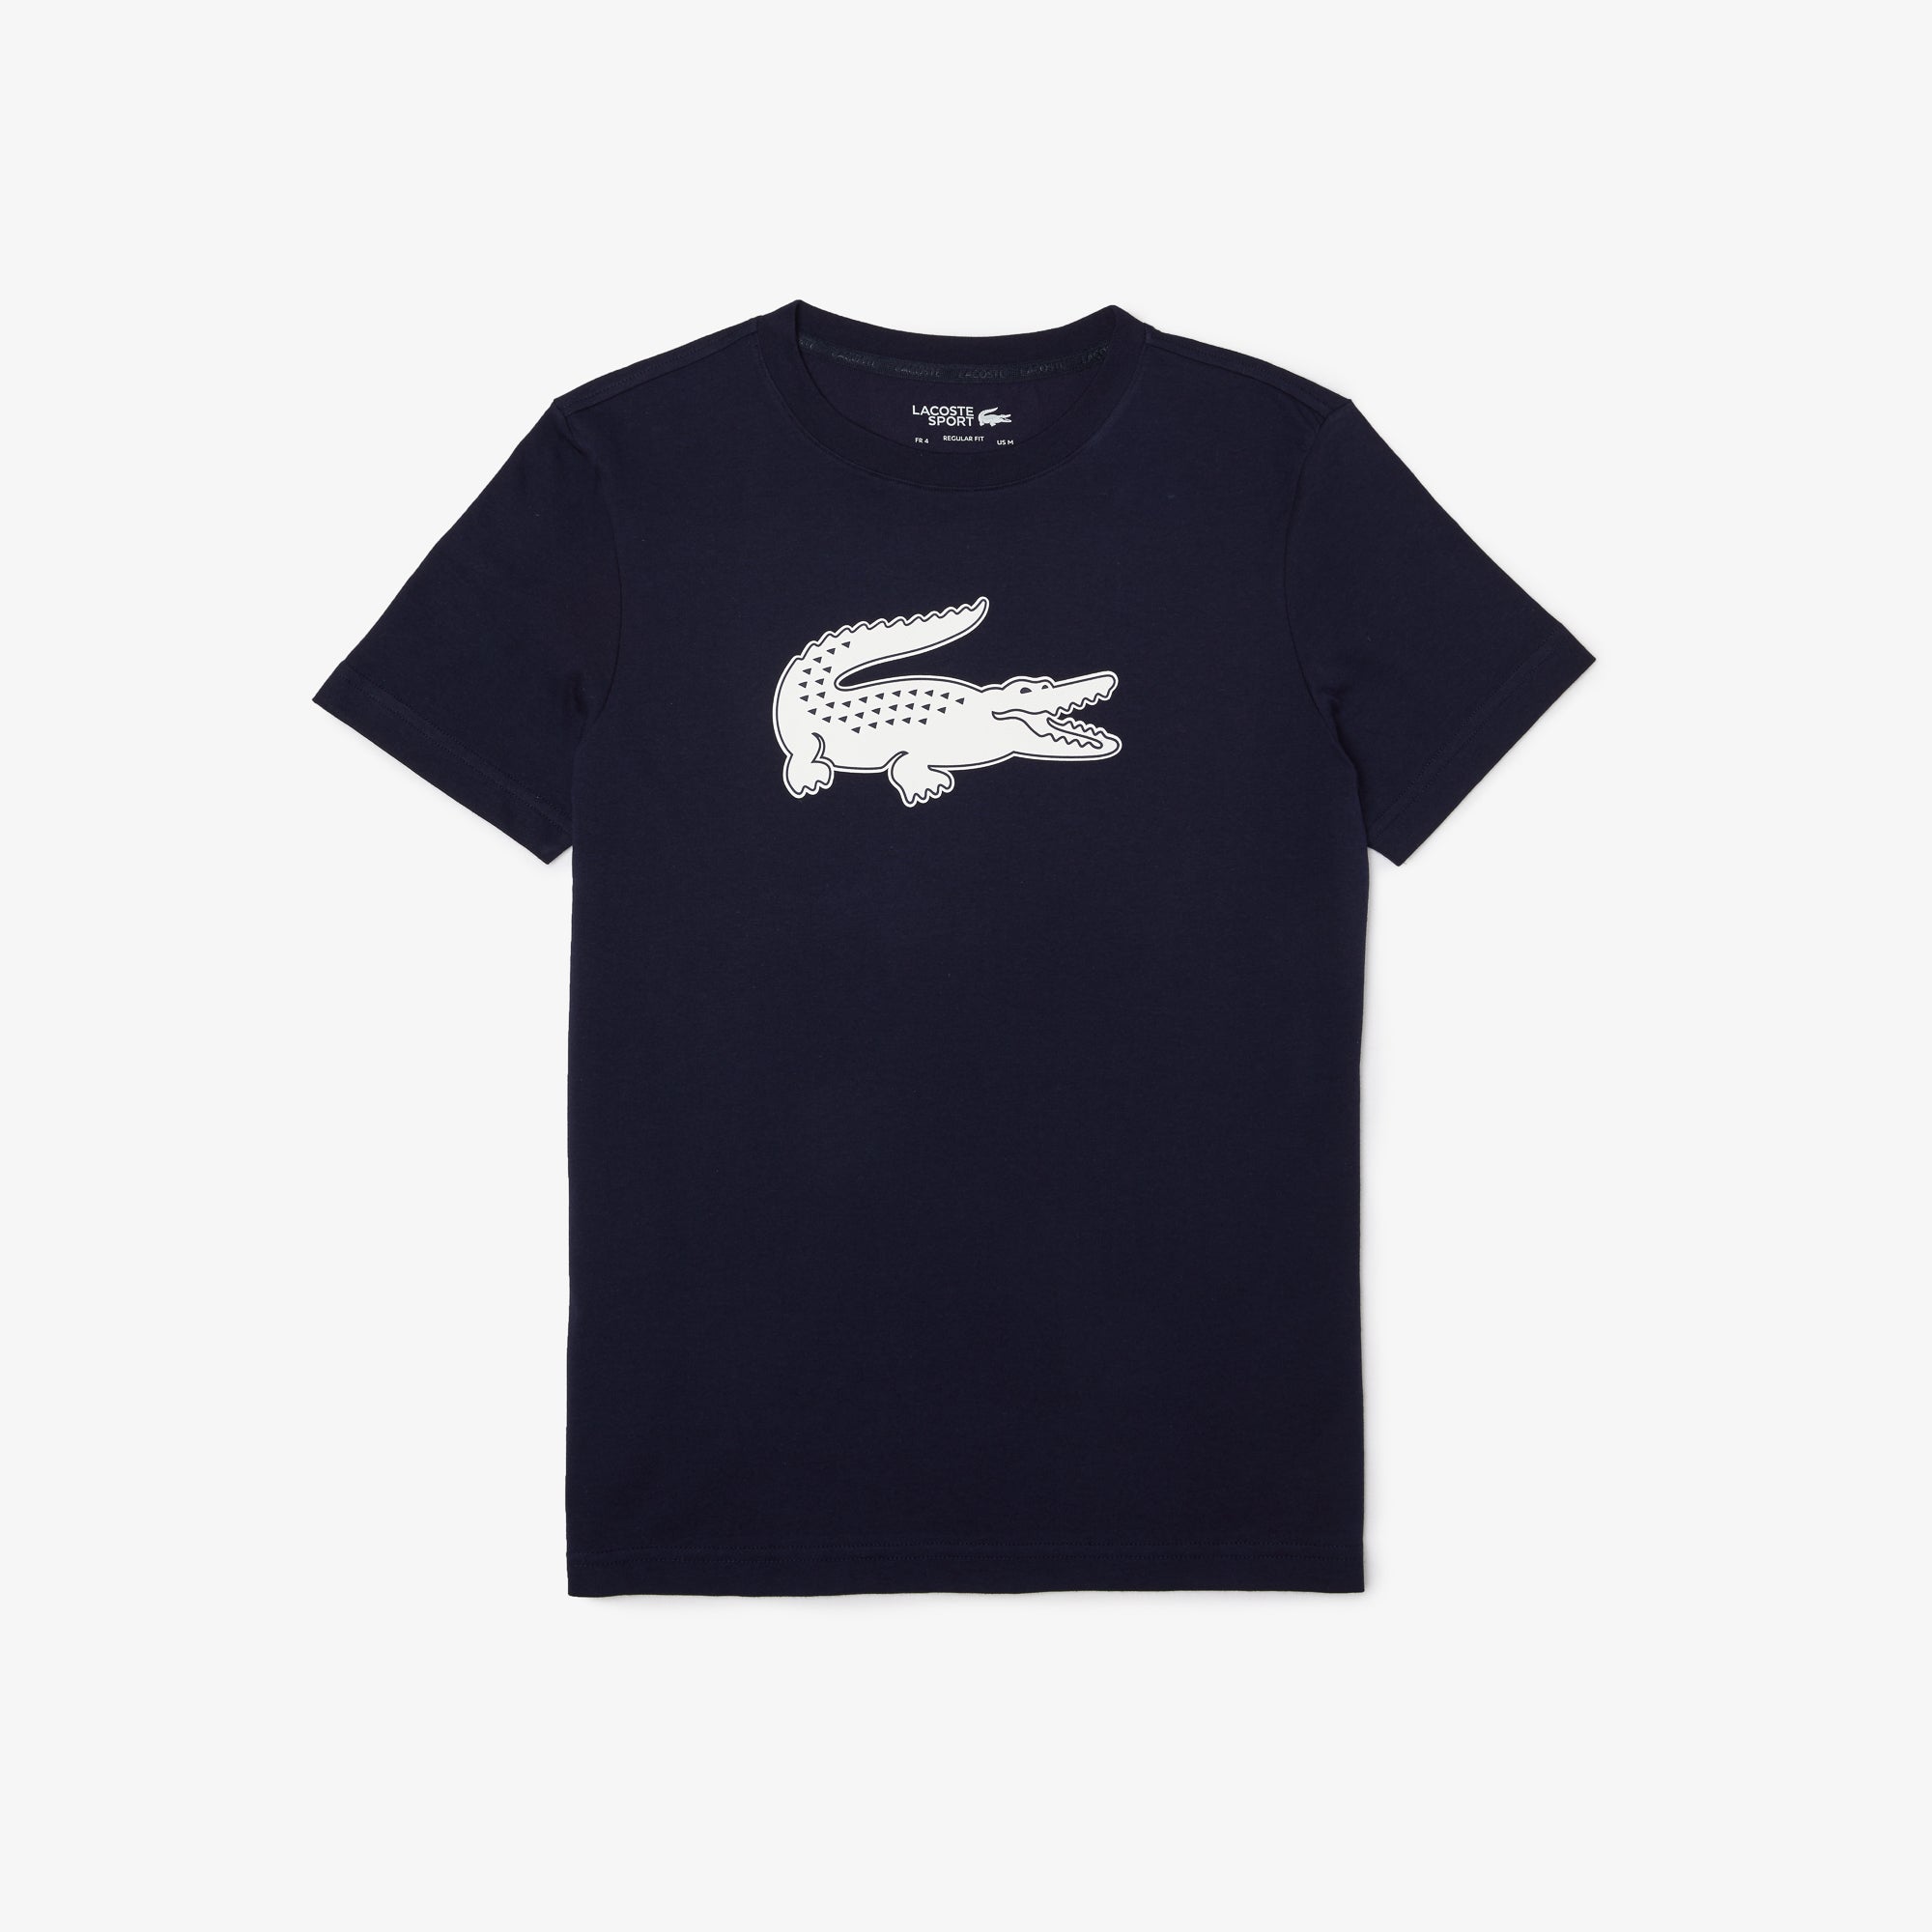 Se Lacoste T-shirt (Navy Blue/White) - S hos Padellife